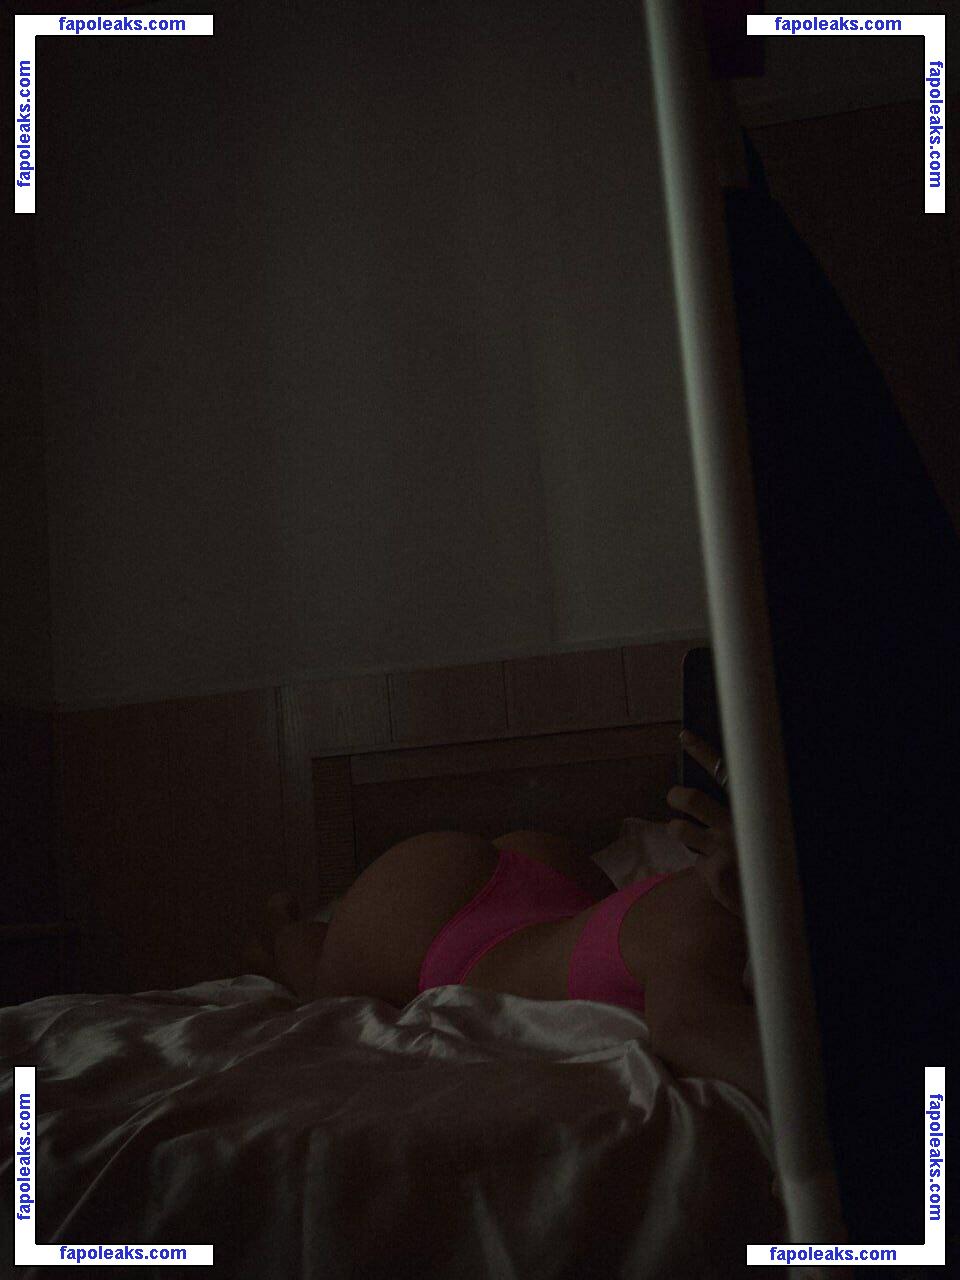 Anastasia Steklova / astklv nude photo #0264 from OnlyFans